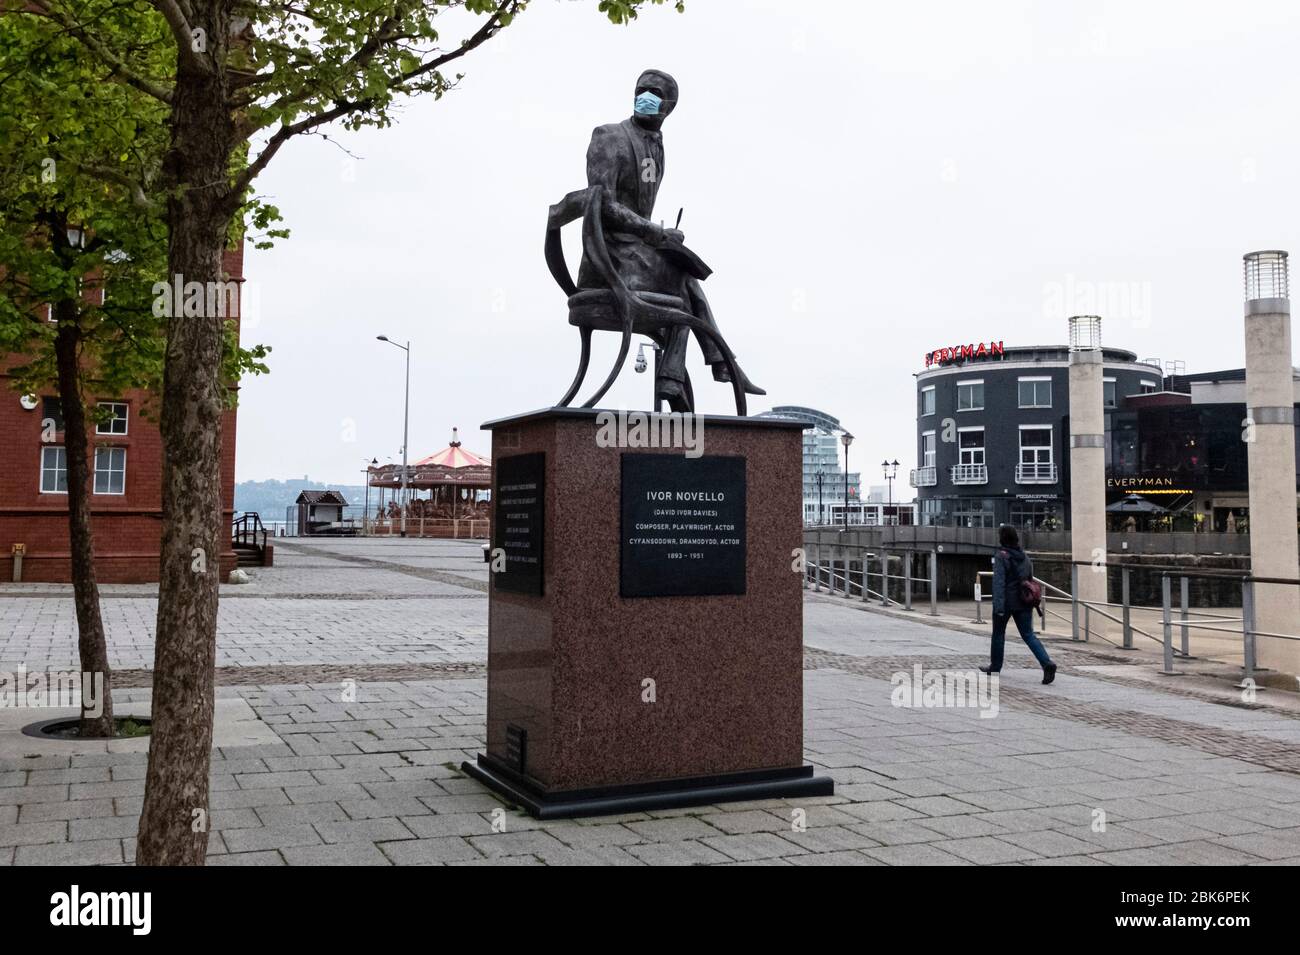 La statue du compositeur et acteur gallois Ivor Novello, dans la baie de Cardiff, au pays de Galles, a son visage couvert d'un masque facial pendant la pandémie du coronavirus COVID19 Banque D'Images